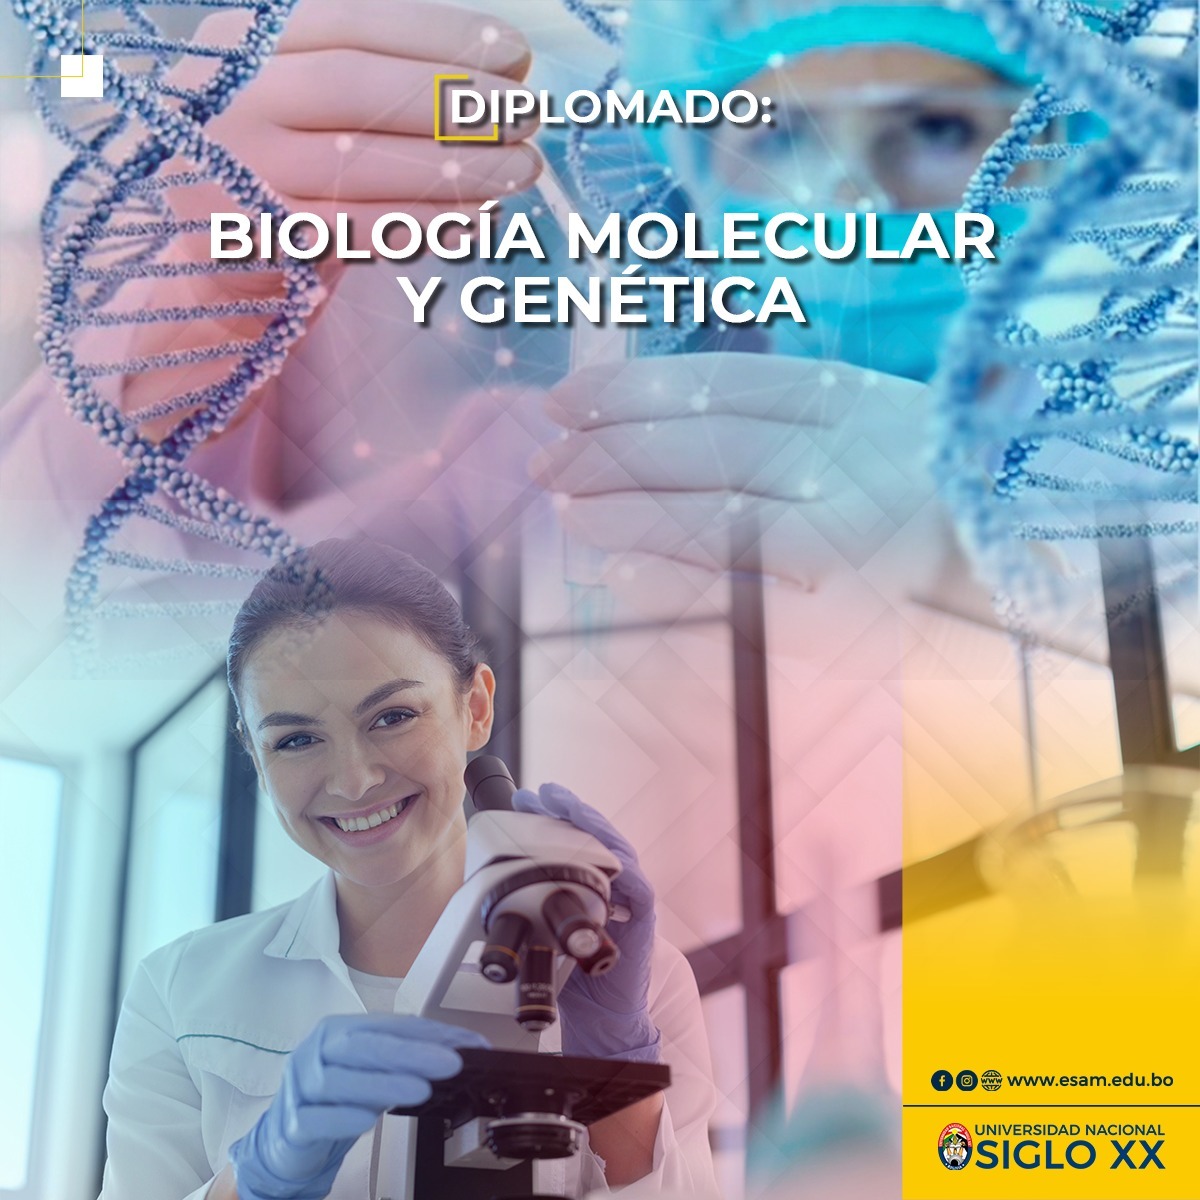 Diplomado DIPLOMADO EN BIOLOGÍA MOLECULAR Y GENÉTICA